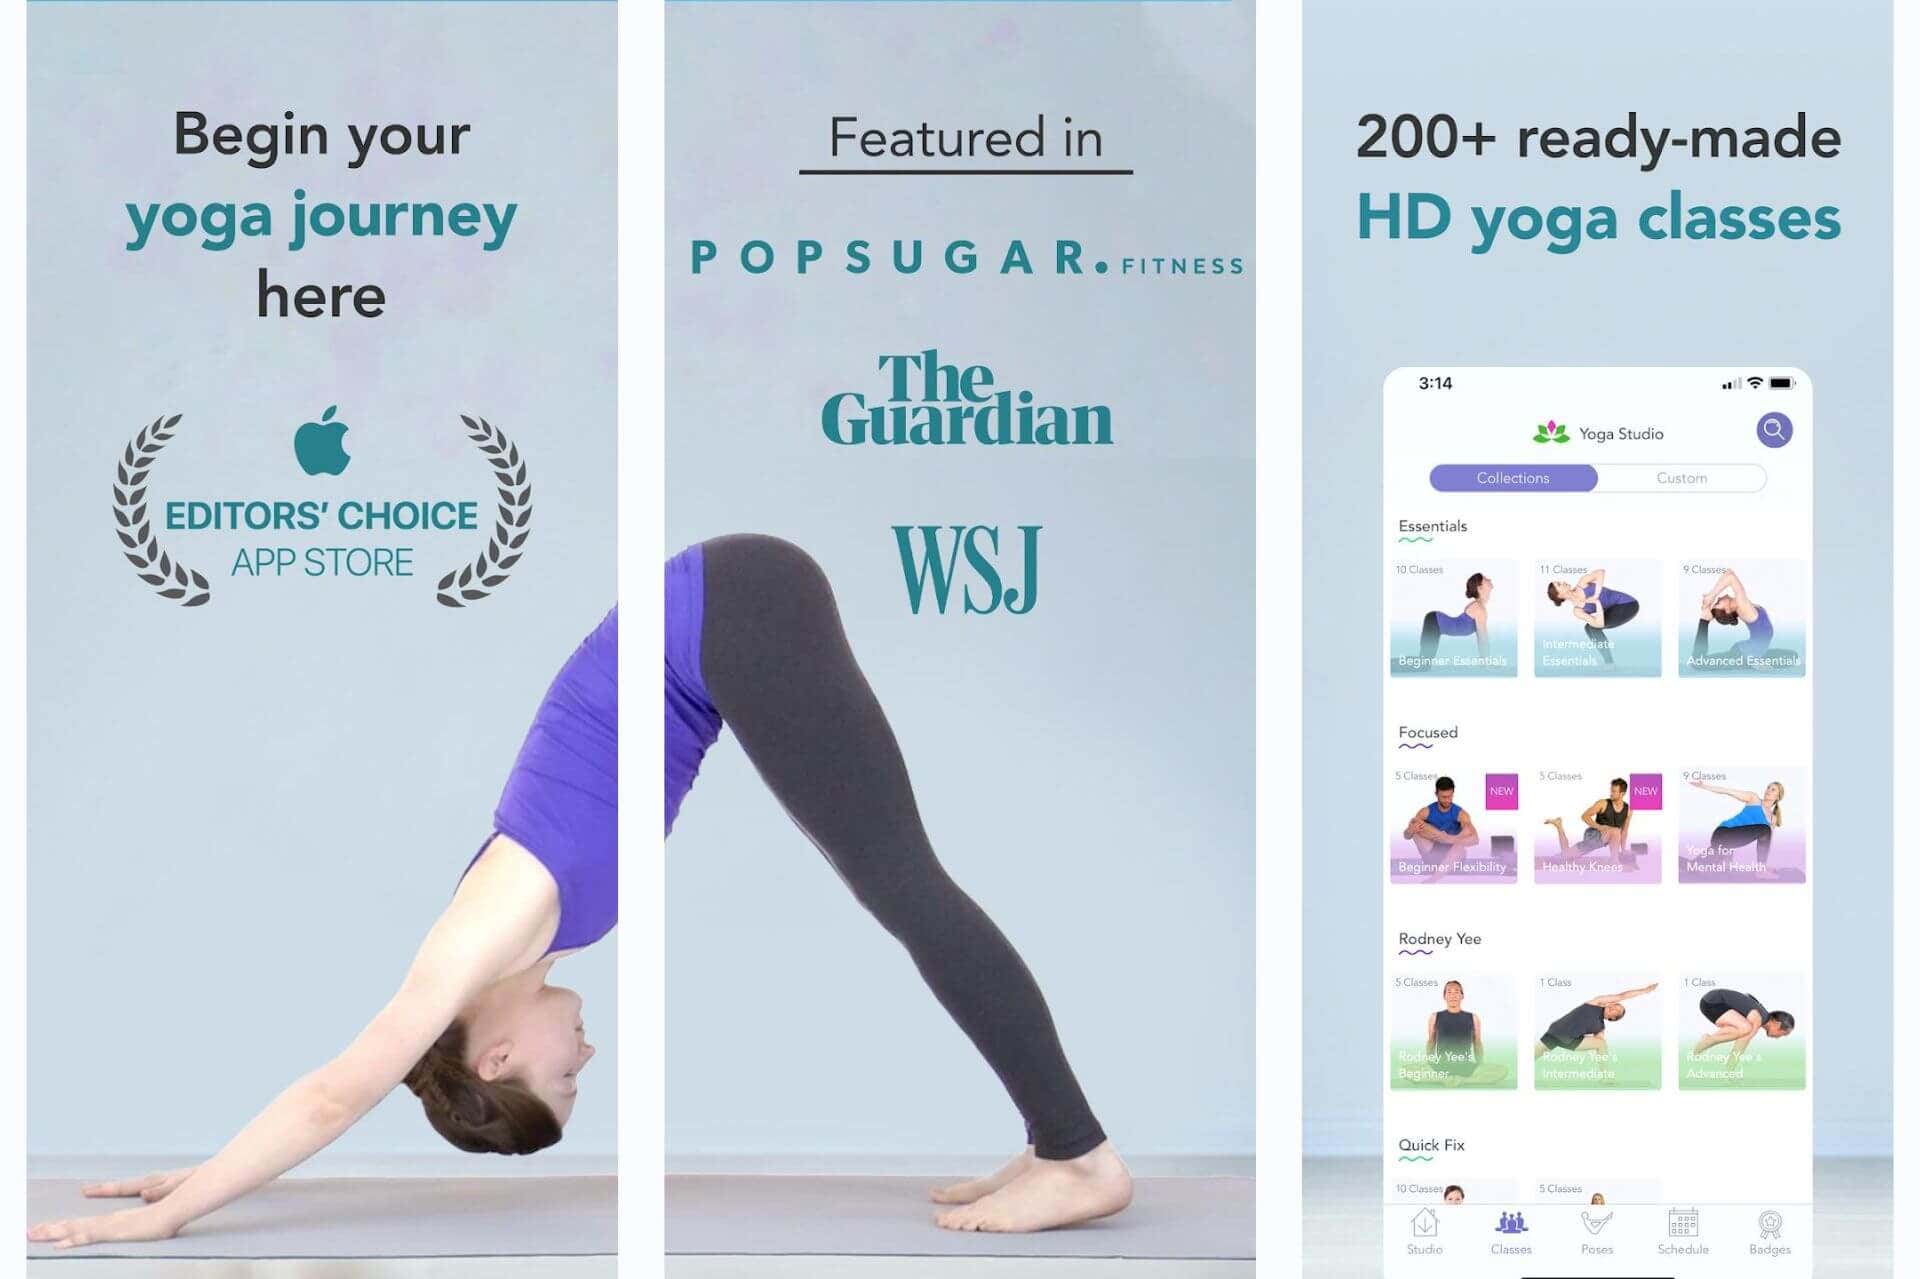 Yoga Studio Poses & Classes. Apps de yoga para principiantes. 